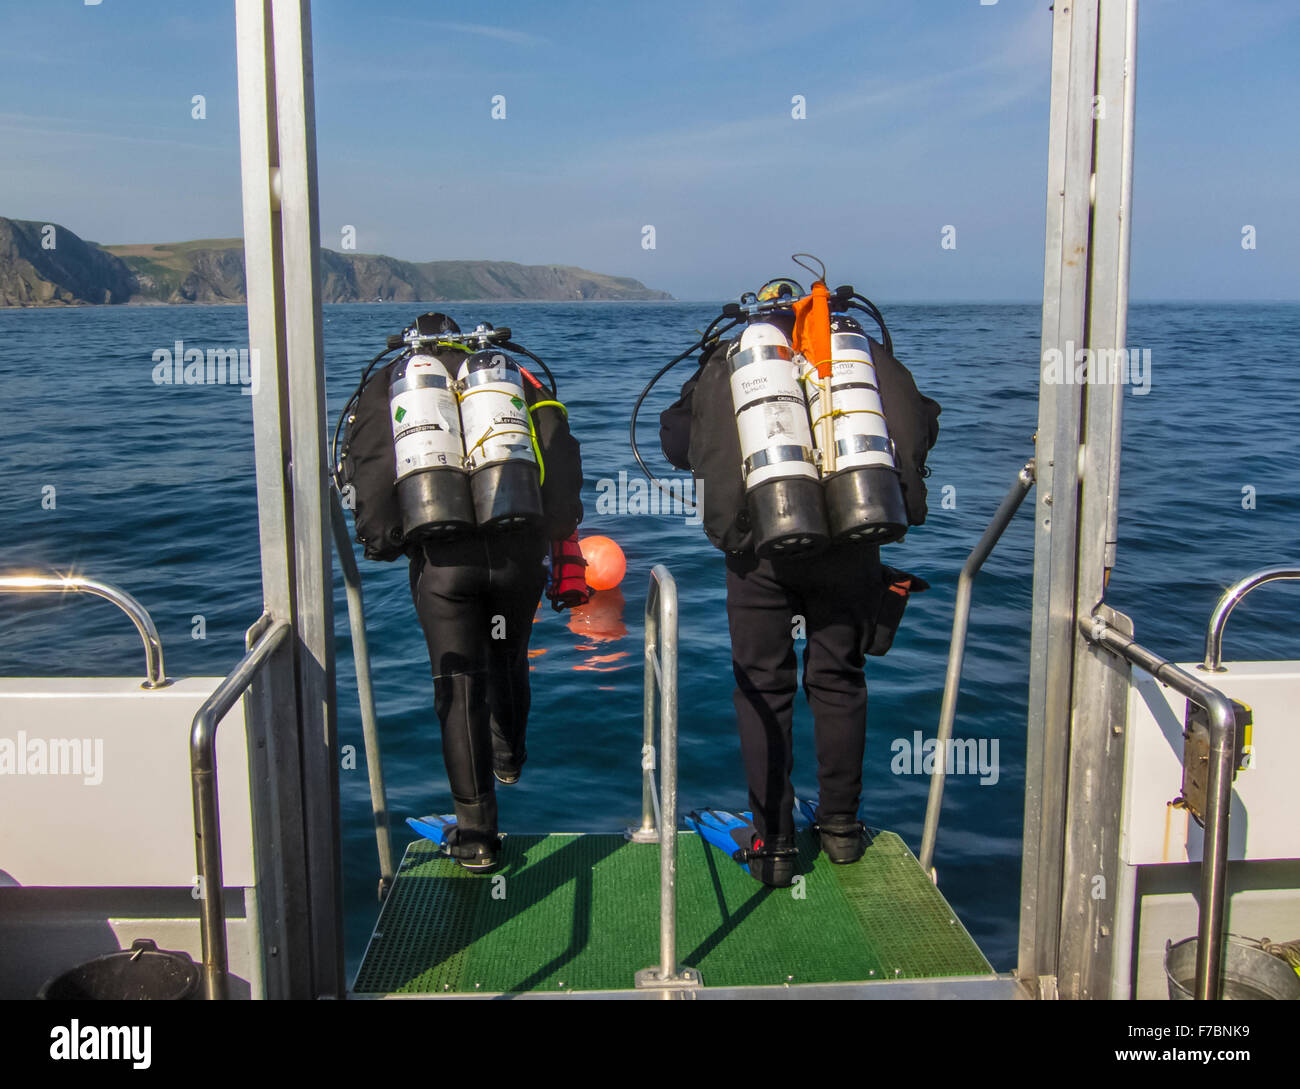 Les plongeurs sauter du bateau de plongée dans l'océan, par St Abbs Ecosse. Banque D'Images